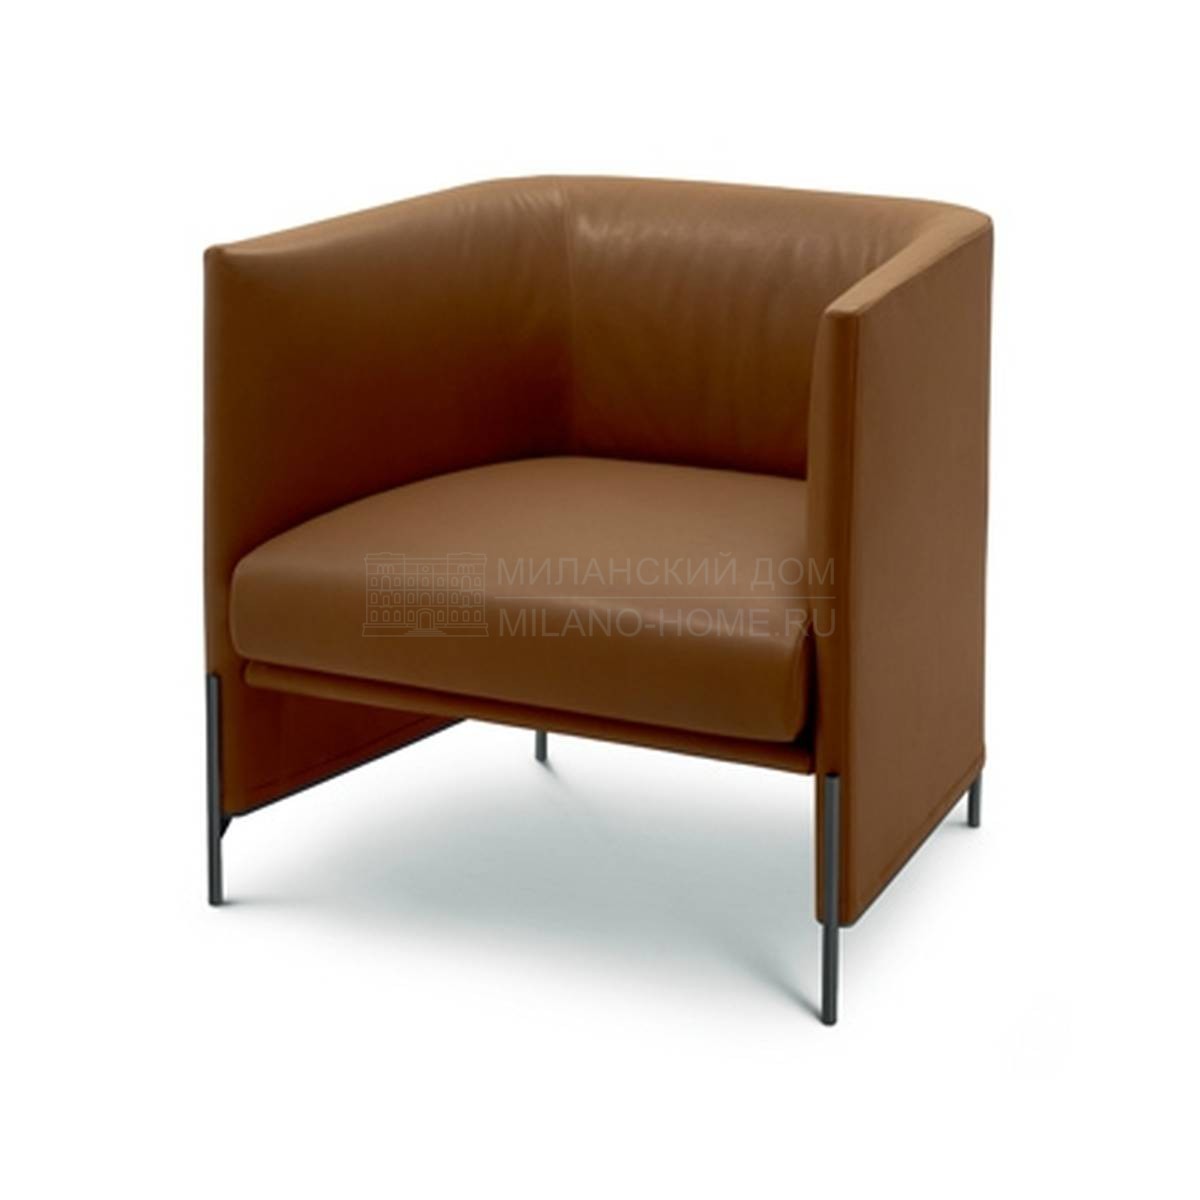 Кожаное кресло Algon leather из Италии фабрики ARFLEX